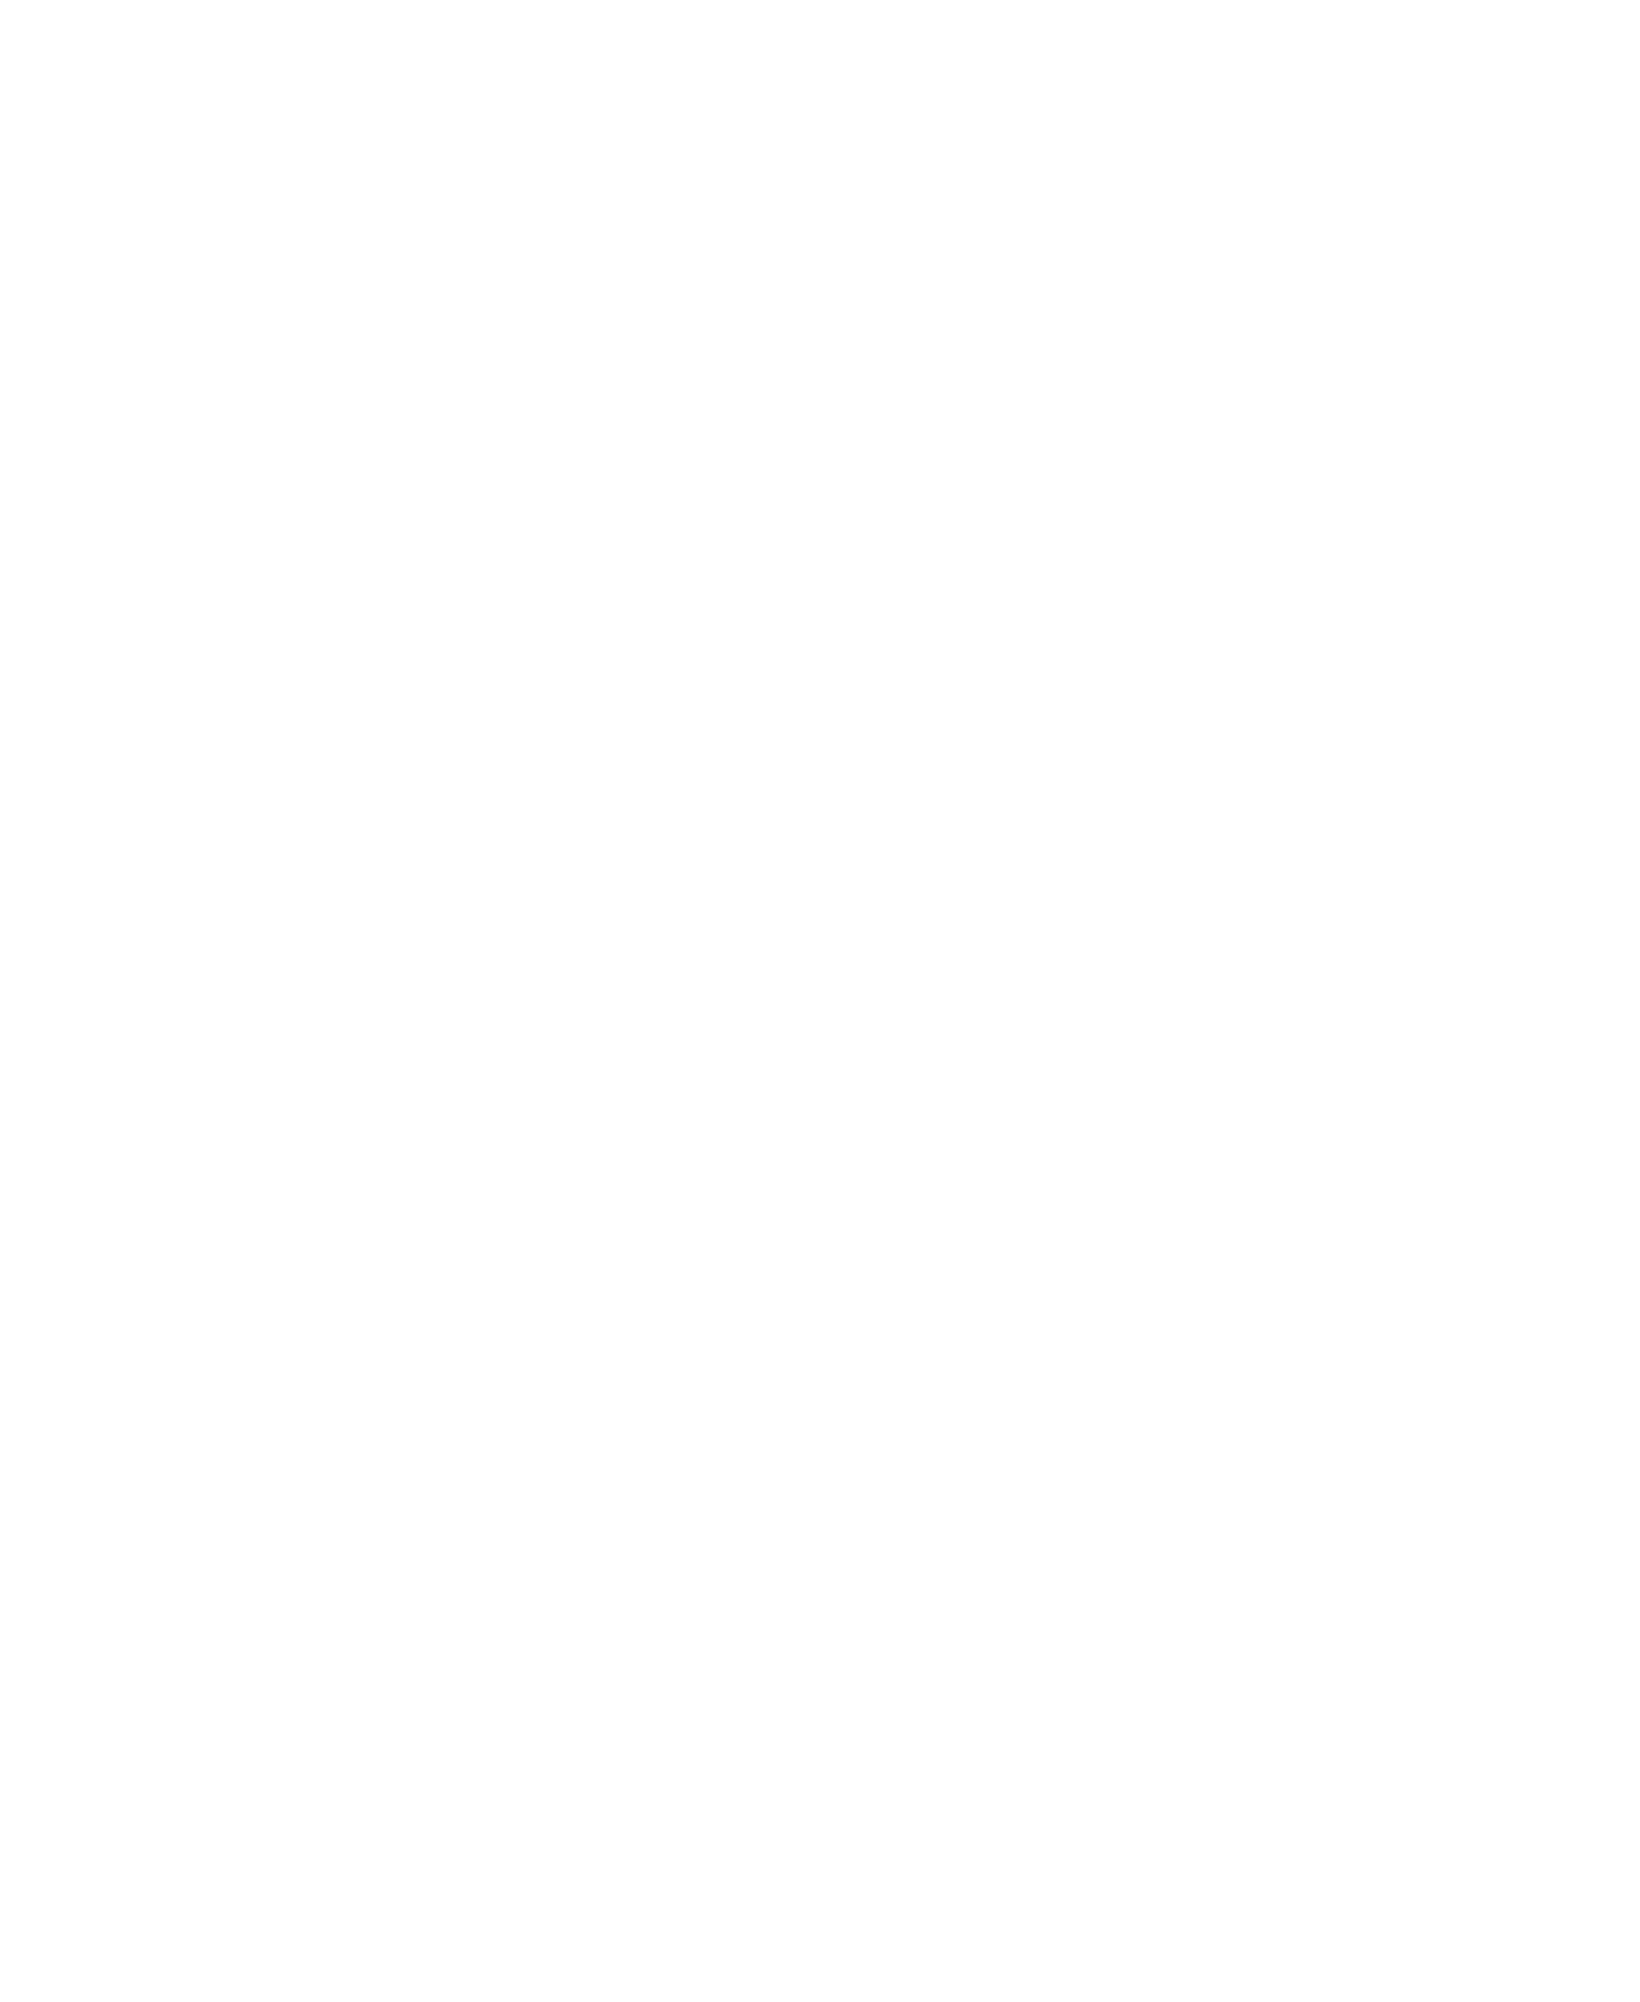 SOLAR : La mécanique de l'ombre